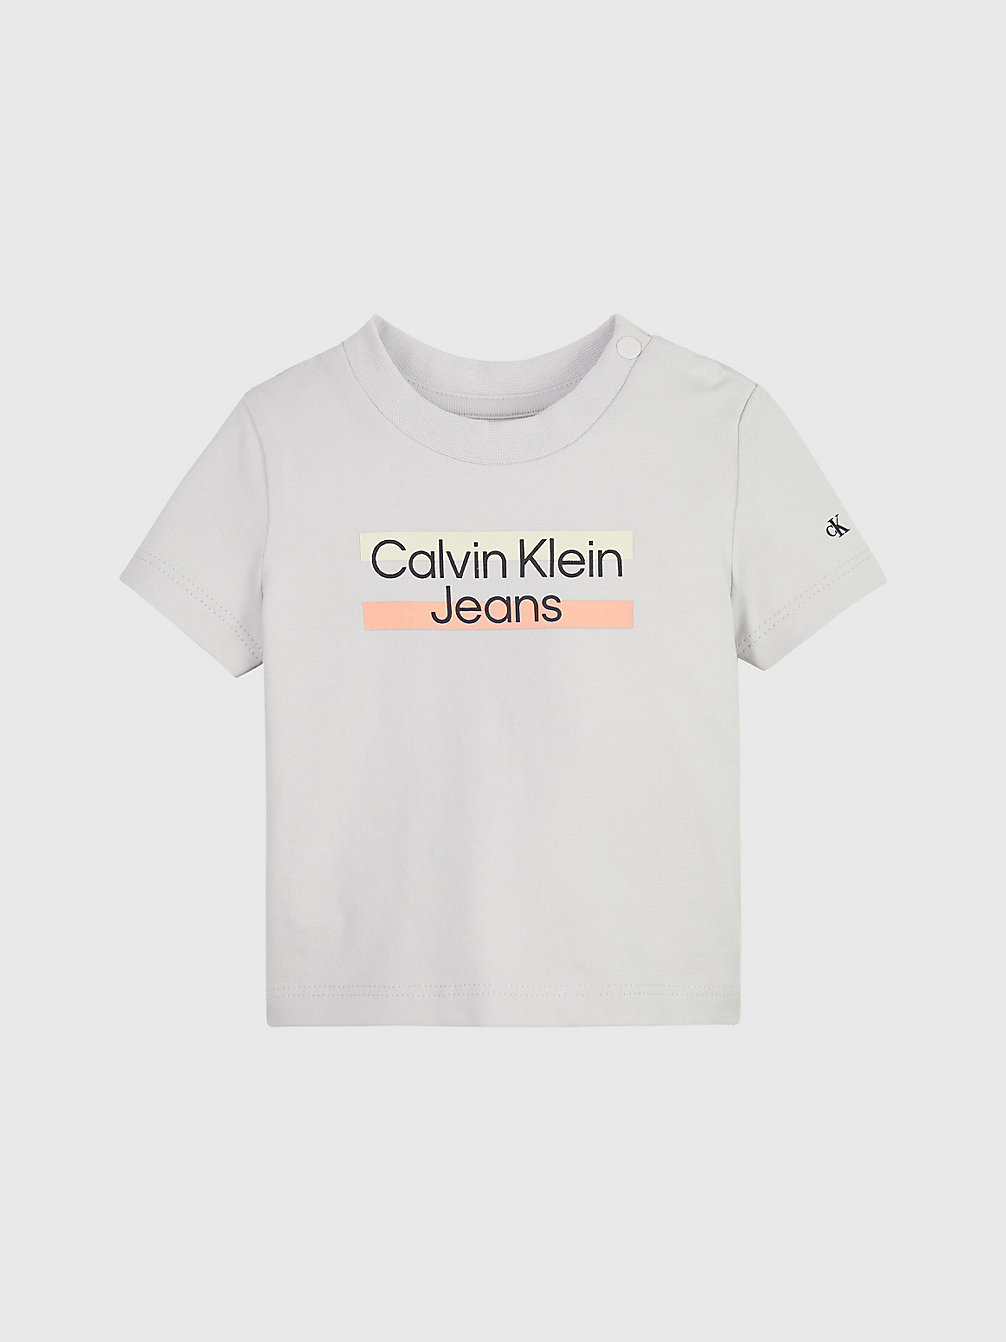 Camiseta Con Logo De Recién Nacido > GHOST GREY > undefined newborn > Calvin Klein